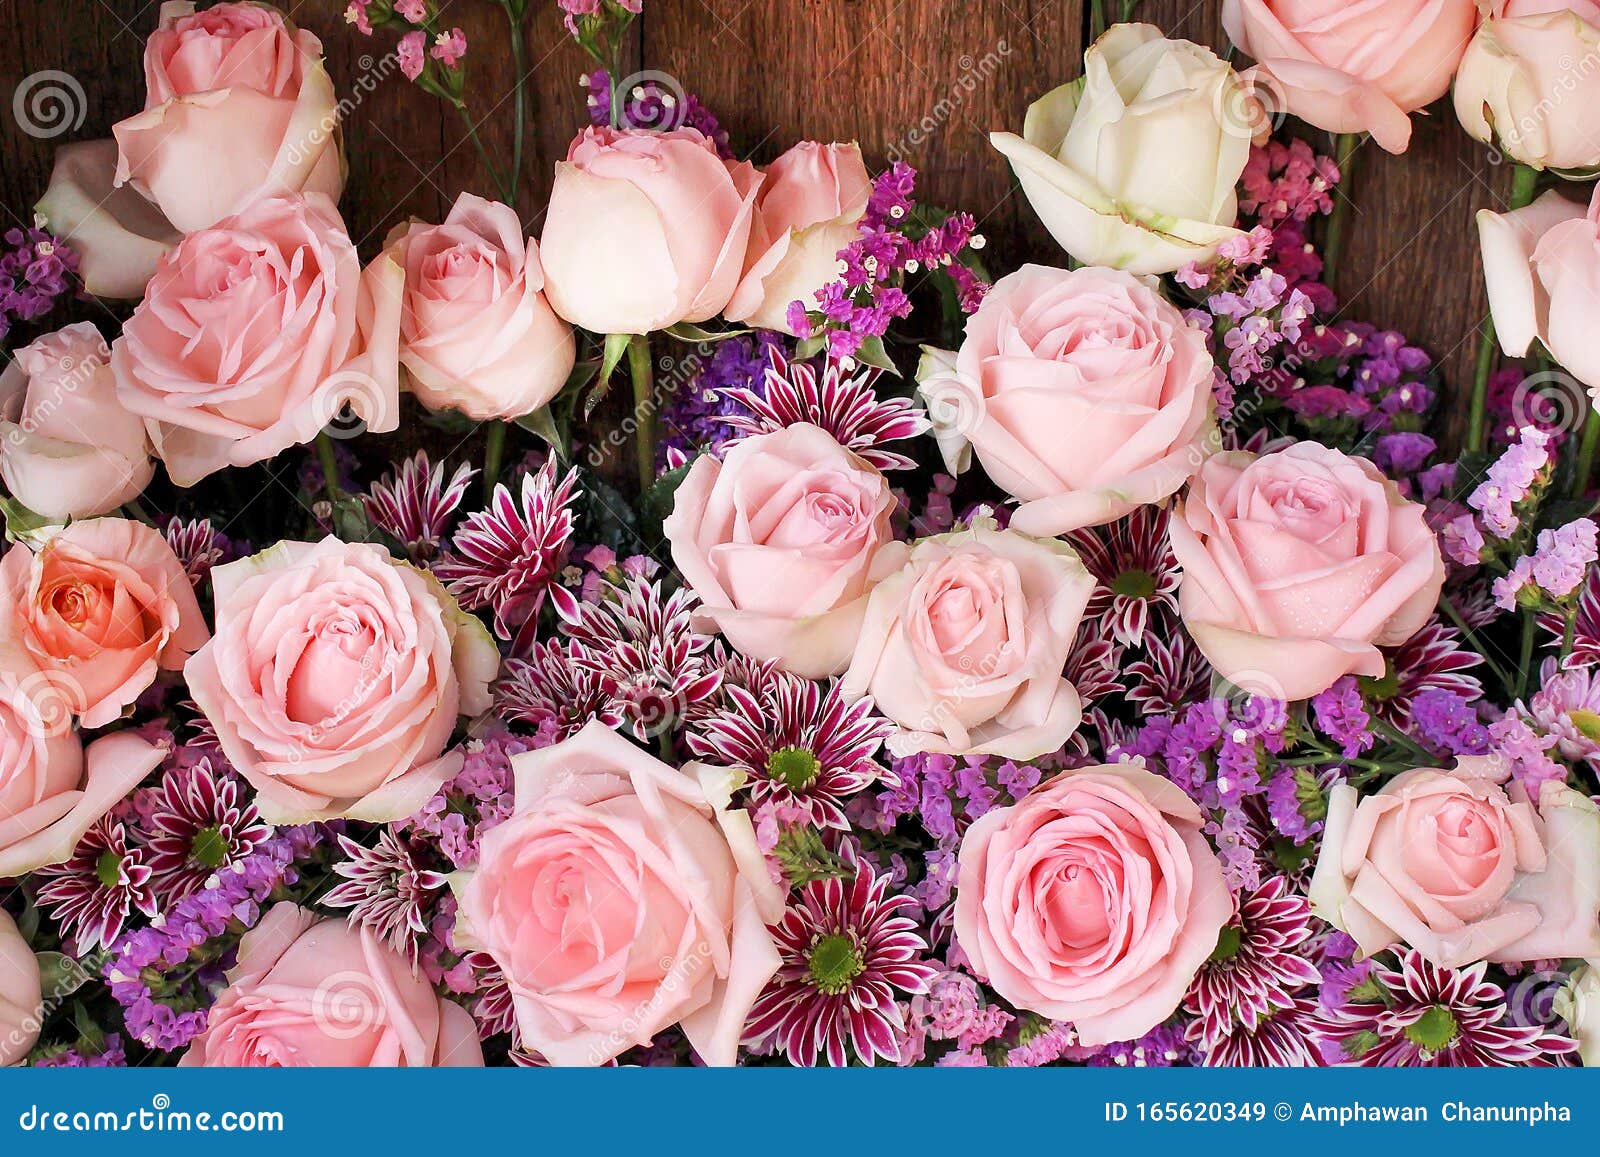 用水滴背景绽放的粉色玫瑰花束图案 用于壁纸情人节或结婚卡背景库存图片 图片包括有礼品 看板卡